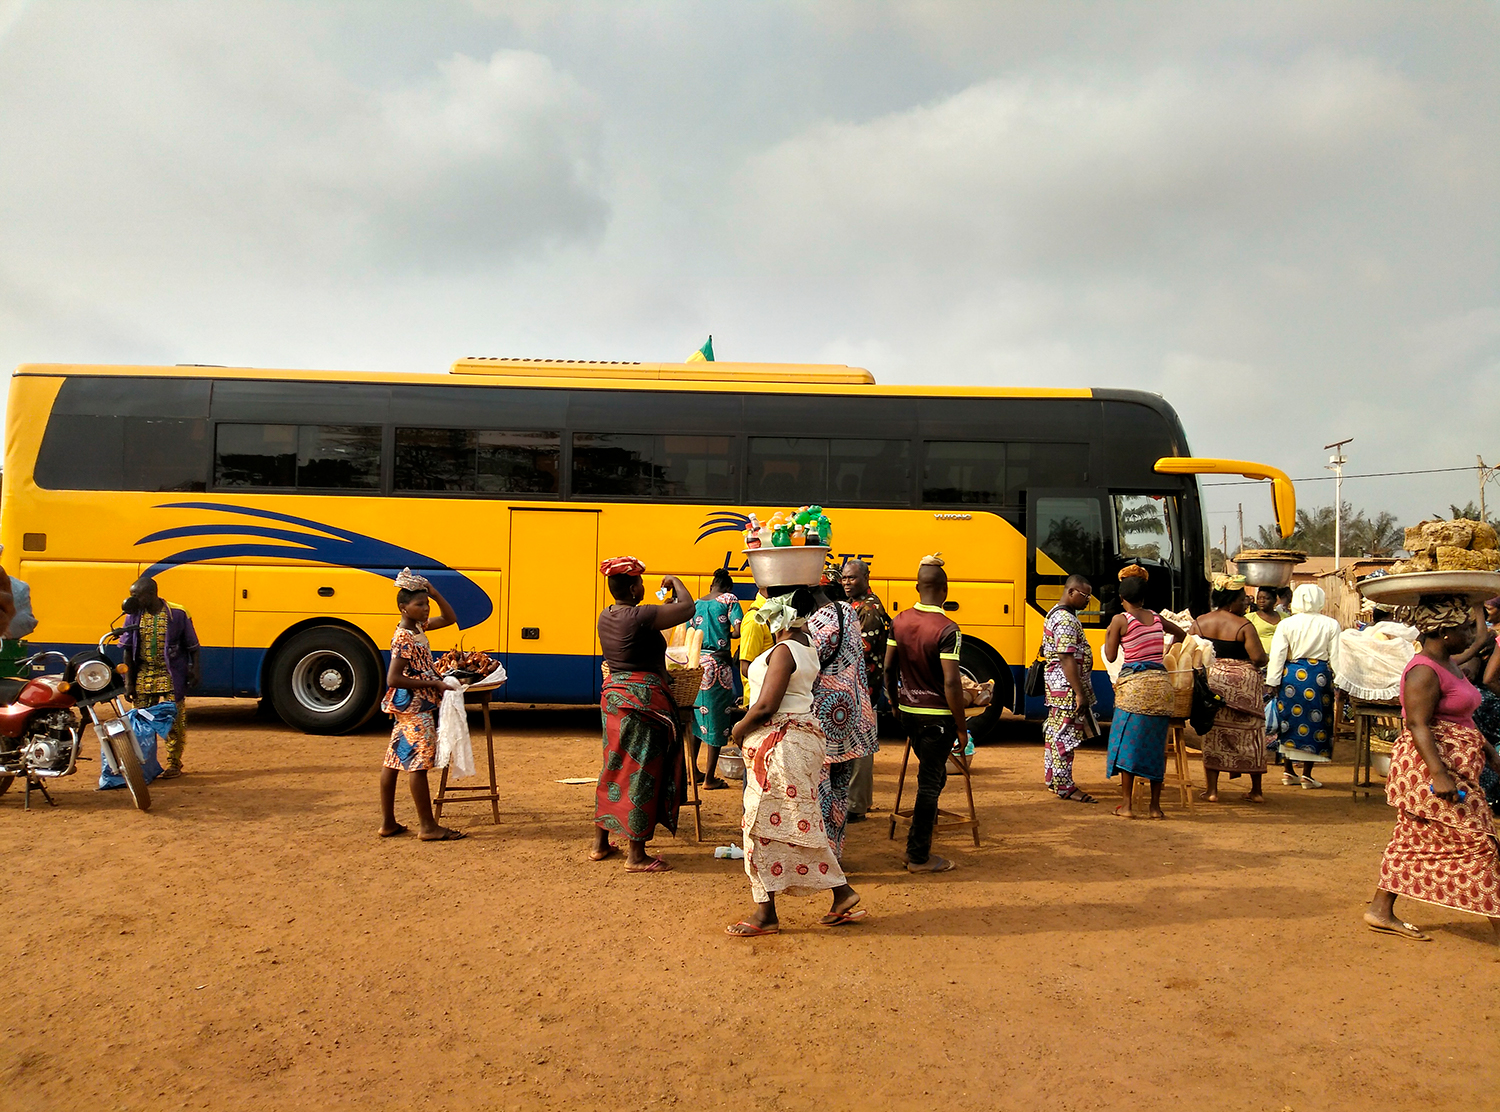 Les compagnies de bus qui traversent le pays du nord au sud proposent des bus confortables équipés du wifi.  